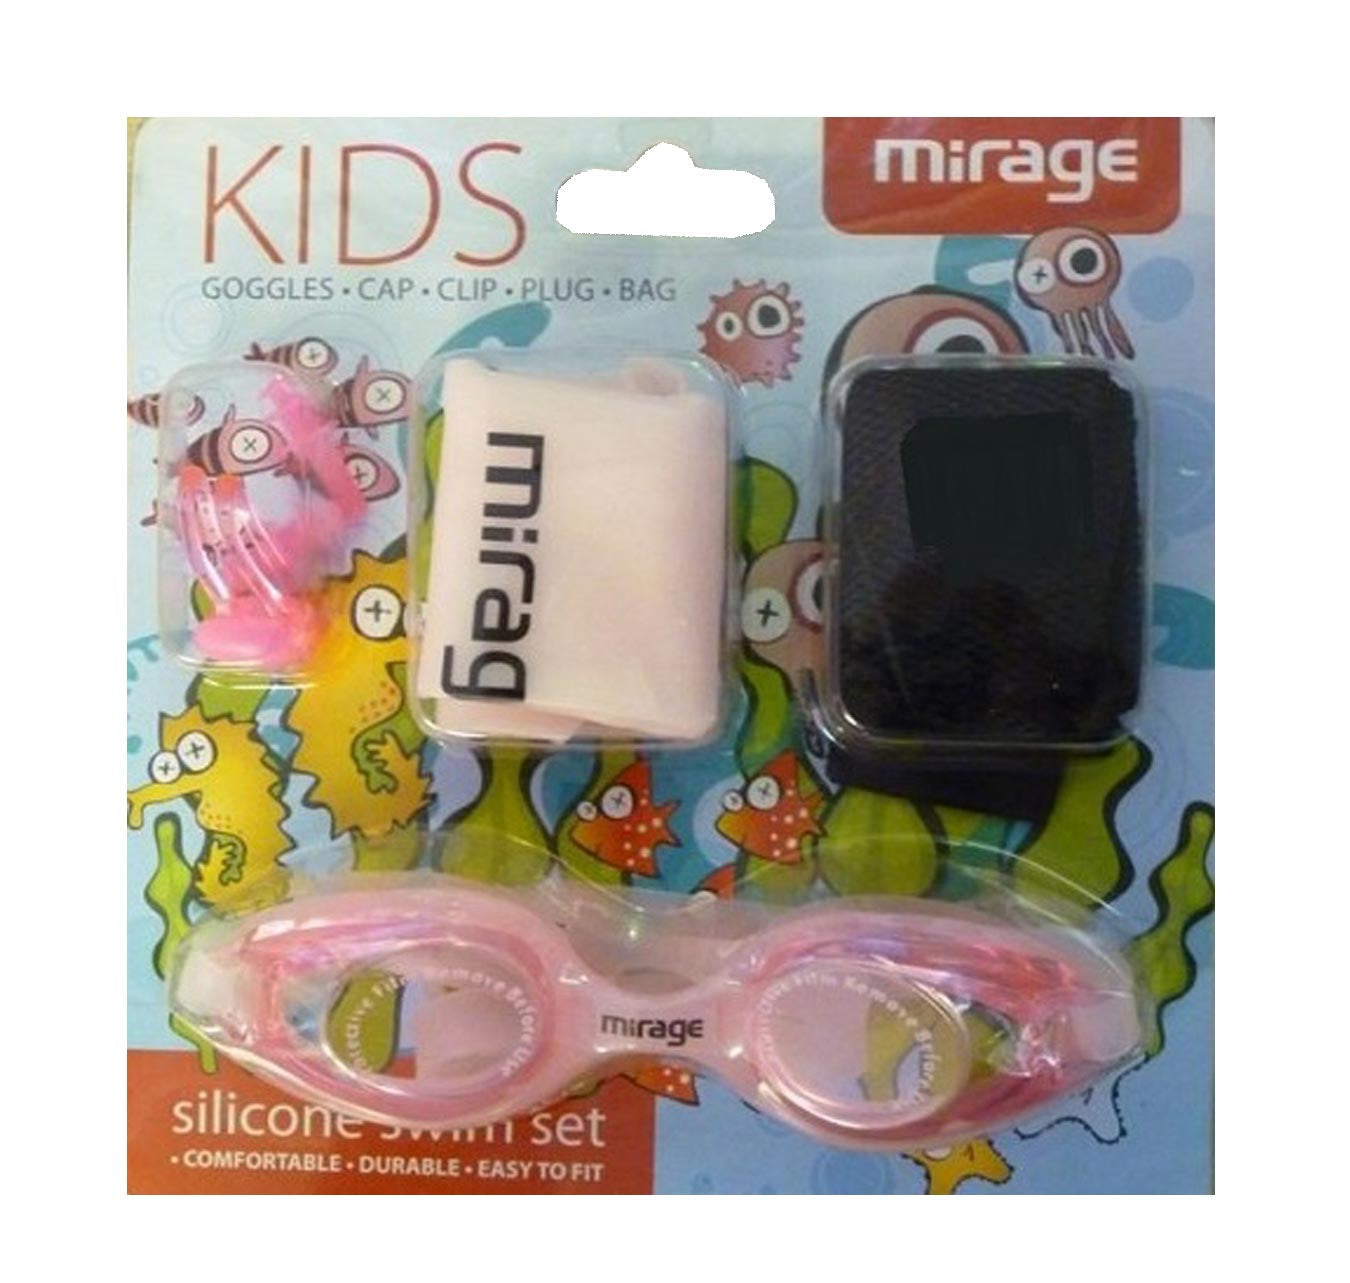 Mirage Kids Silicone Swim Set Pink